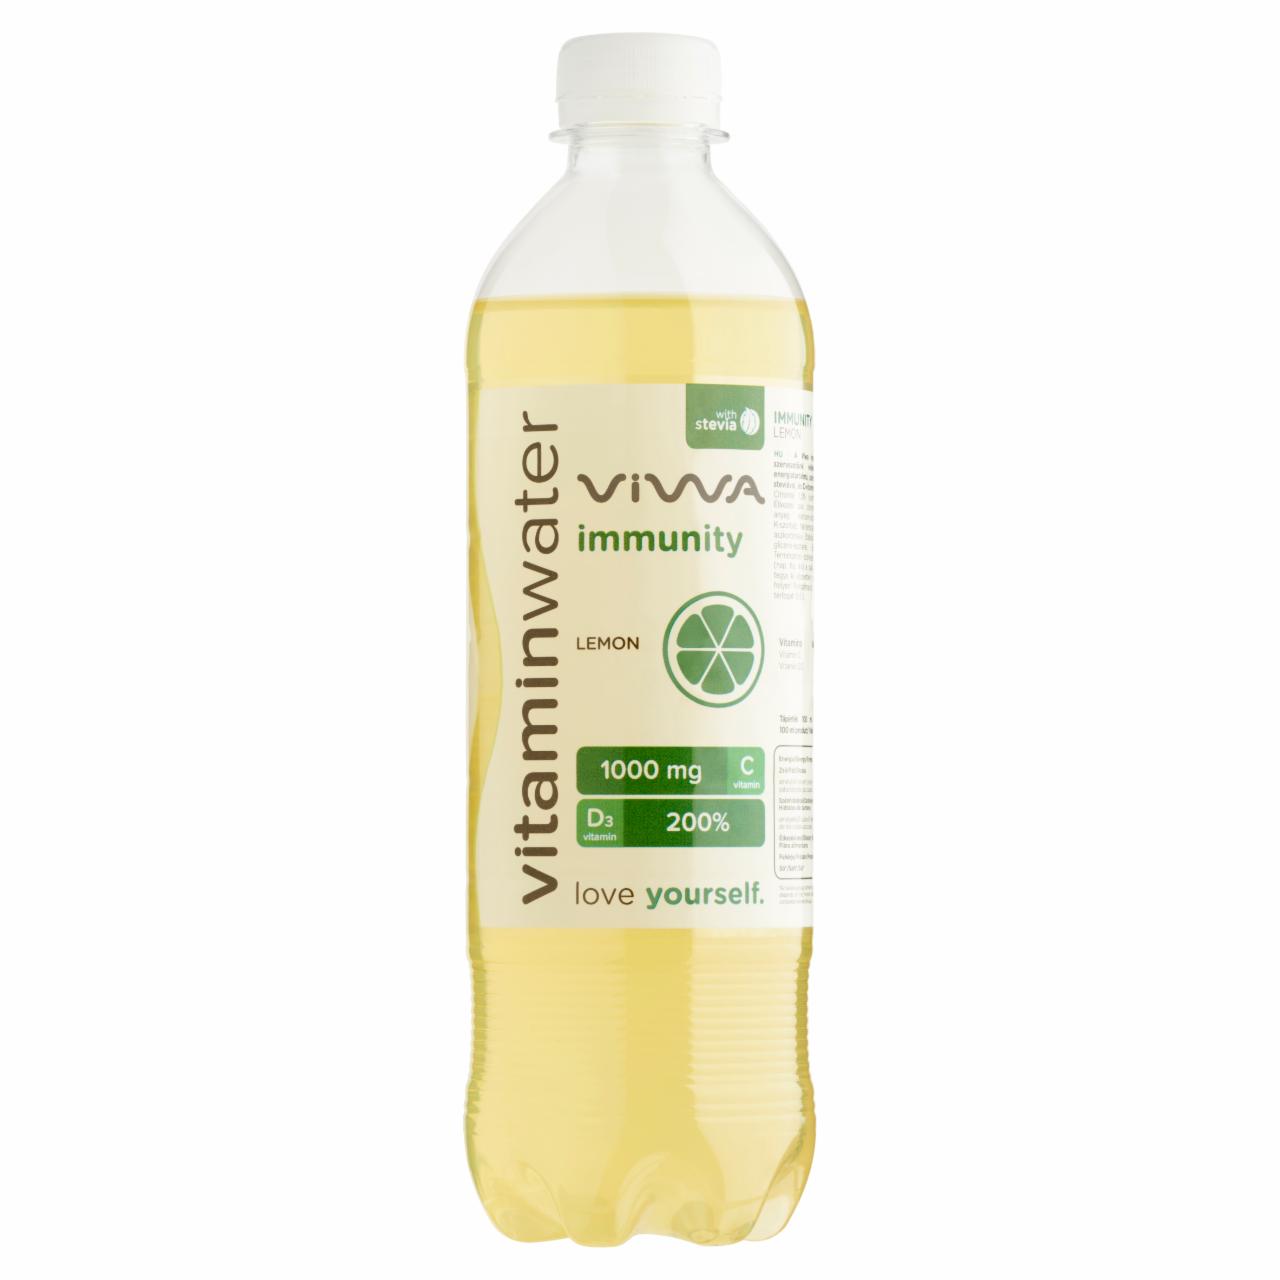 Képek - Viwa Vitaminwater Immunity citrom ízű, csökkentett energiatartalmú szénsavmentes üdítőital 600 ml